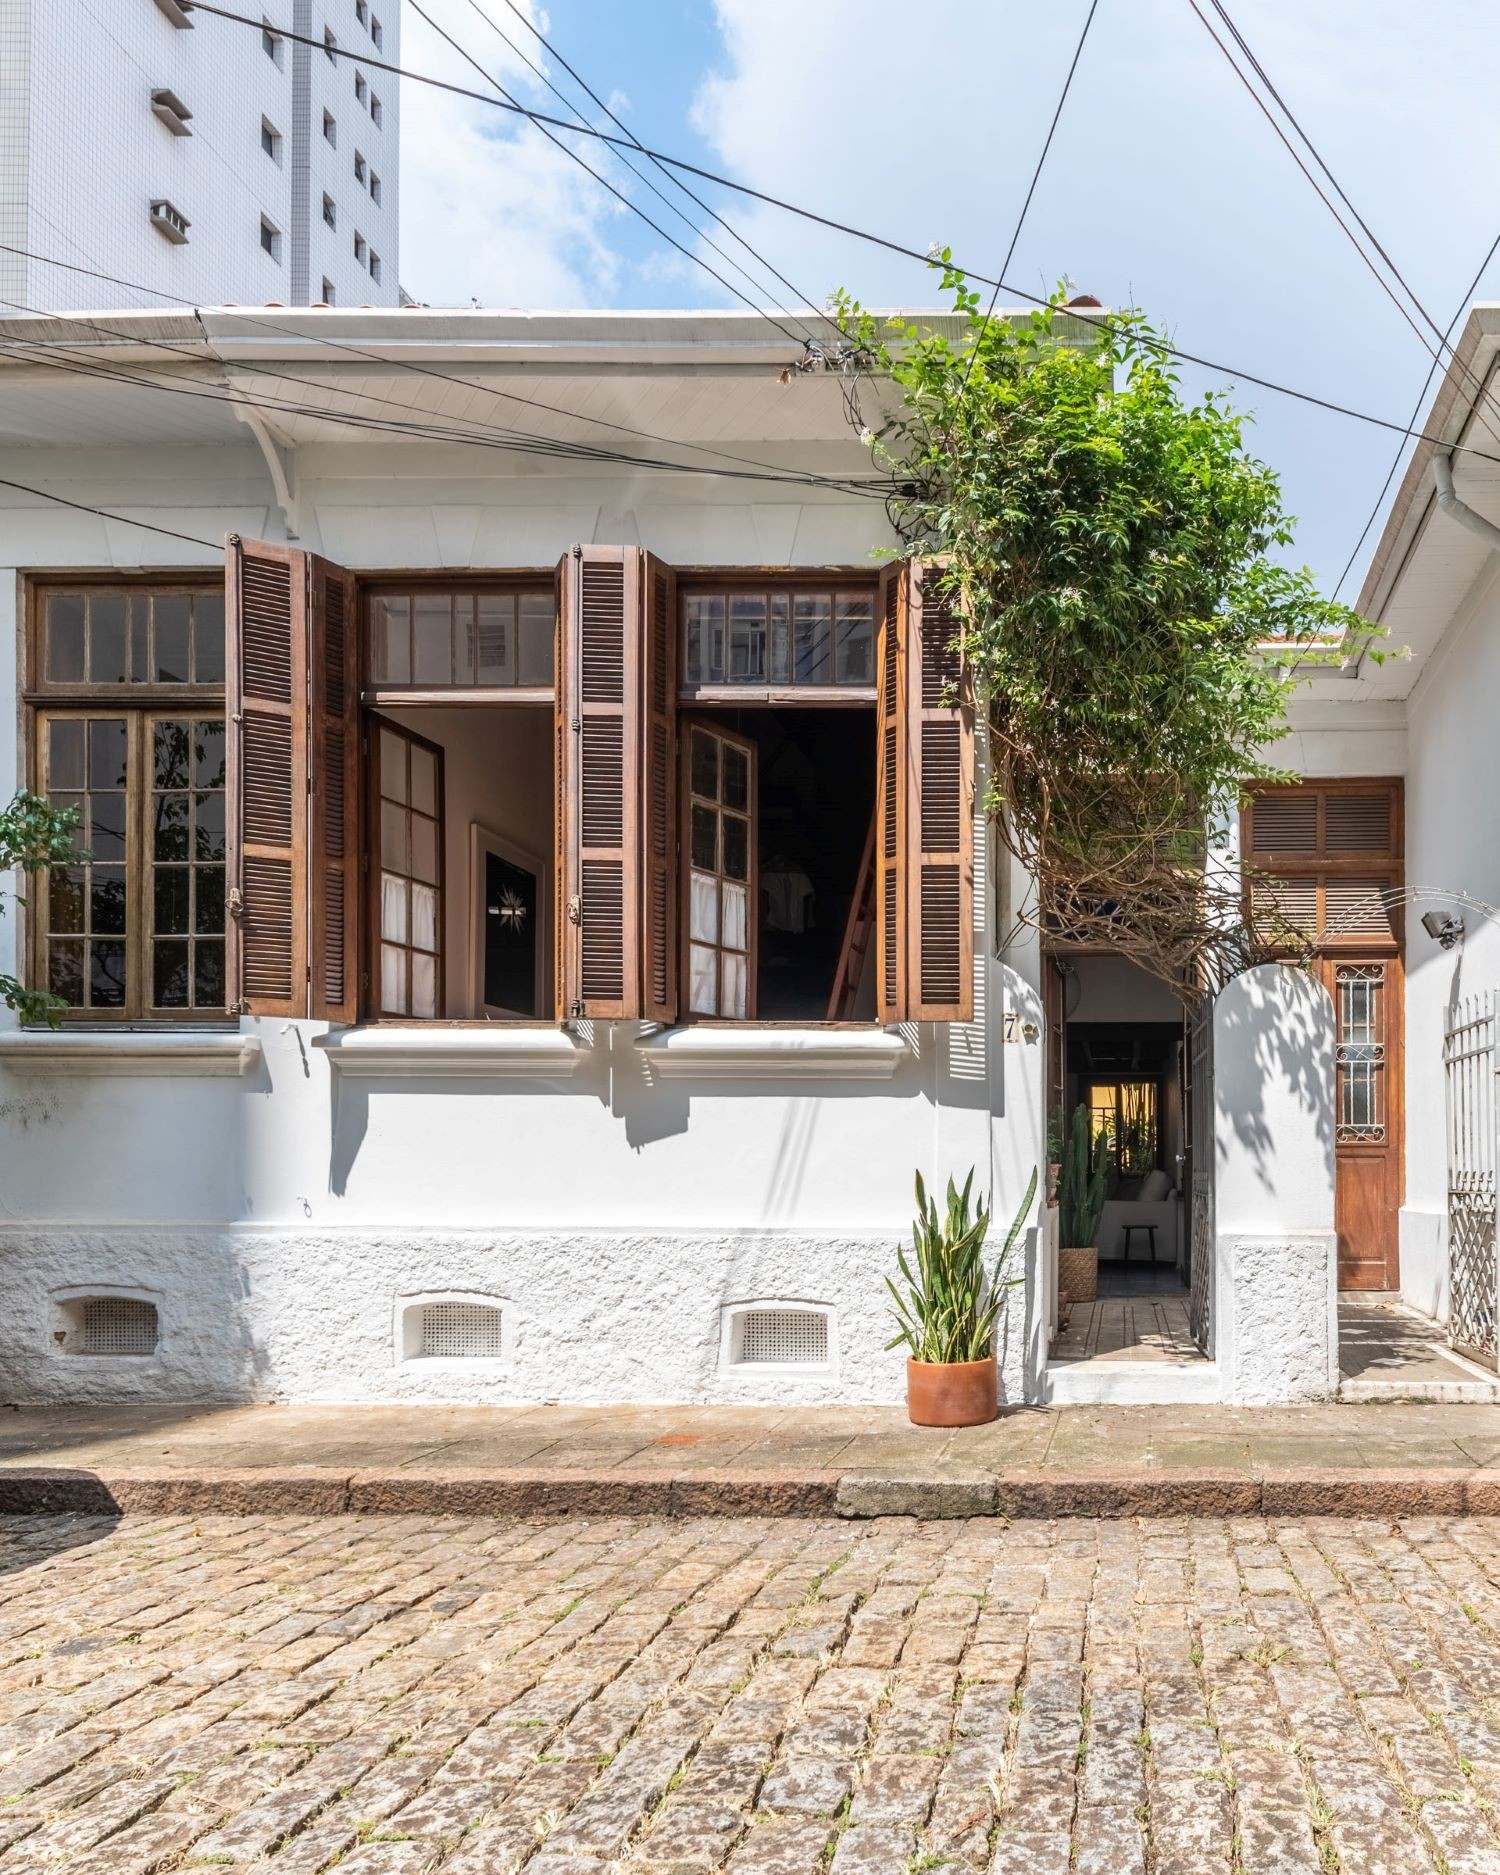 A casa tradicional do século 20 tem a entrada pela lateral e janelões voltados para a rua, em uma vila (Foto: Guilherme Pucci / Divulgação)